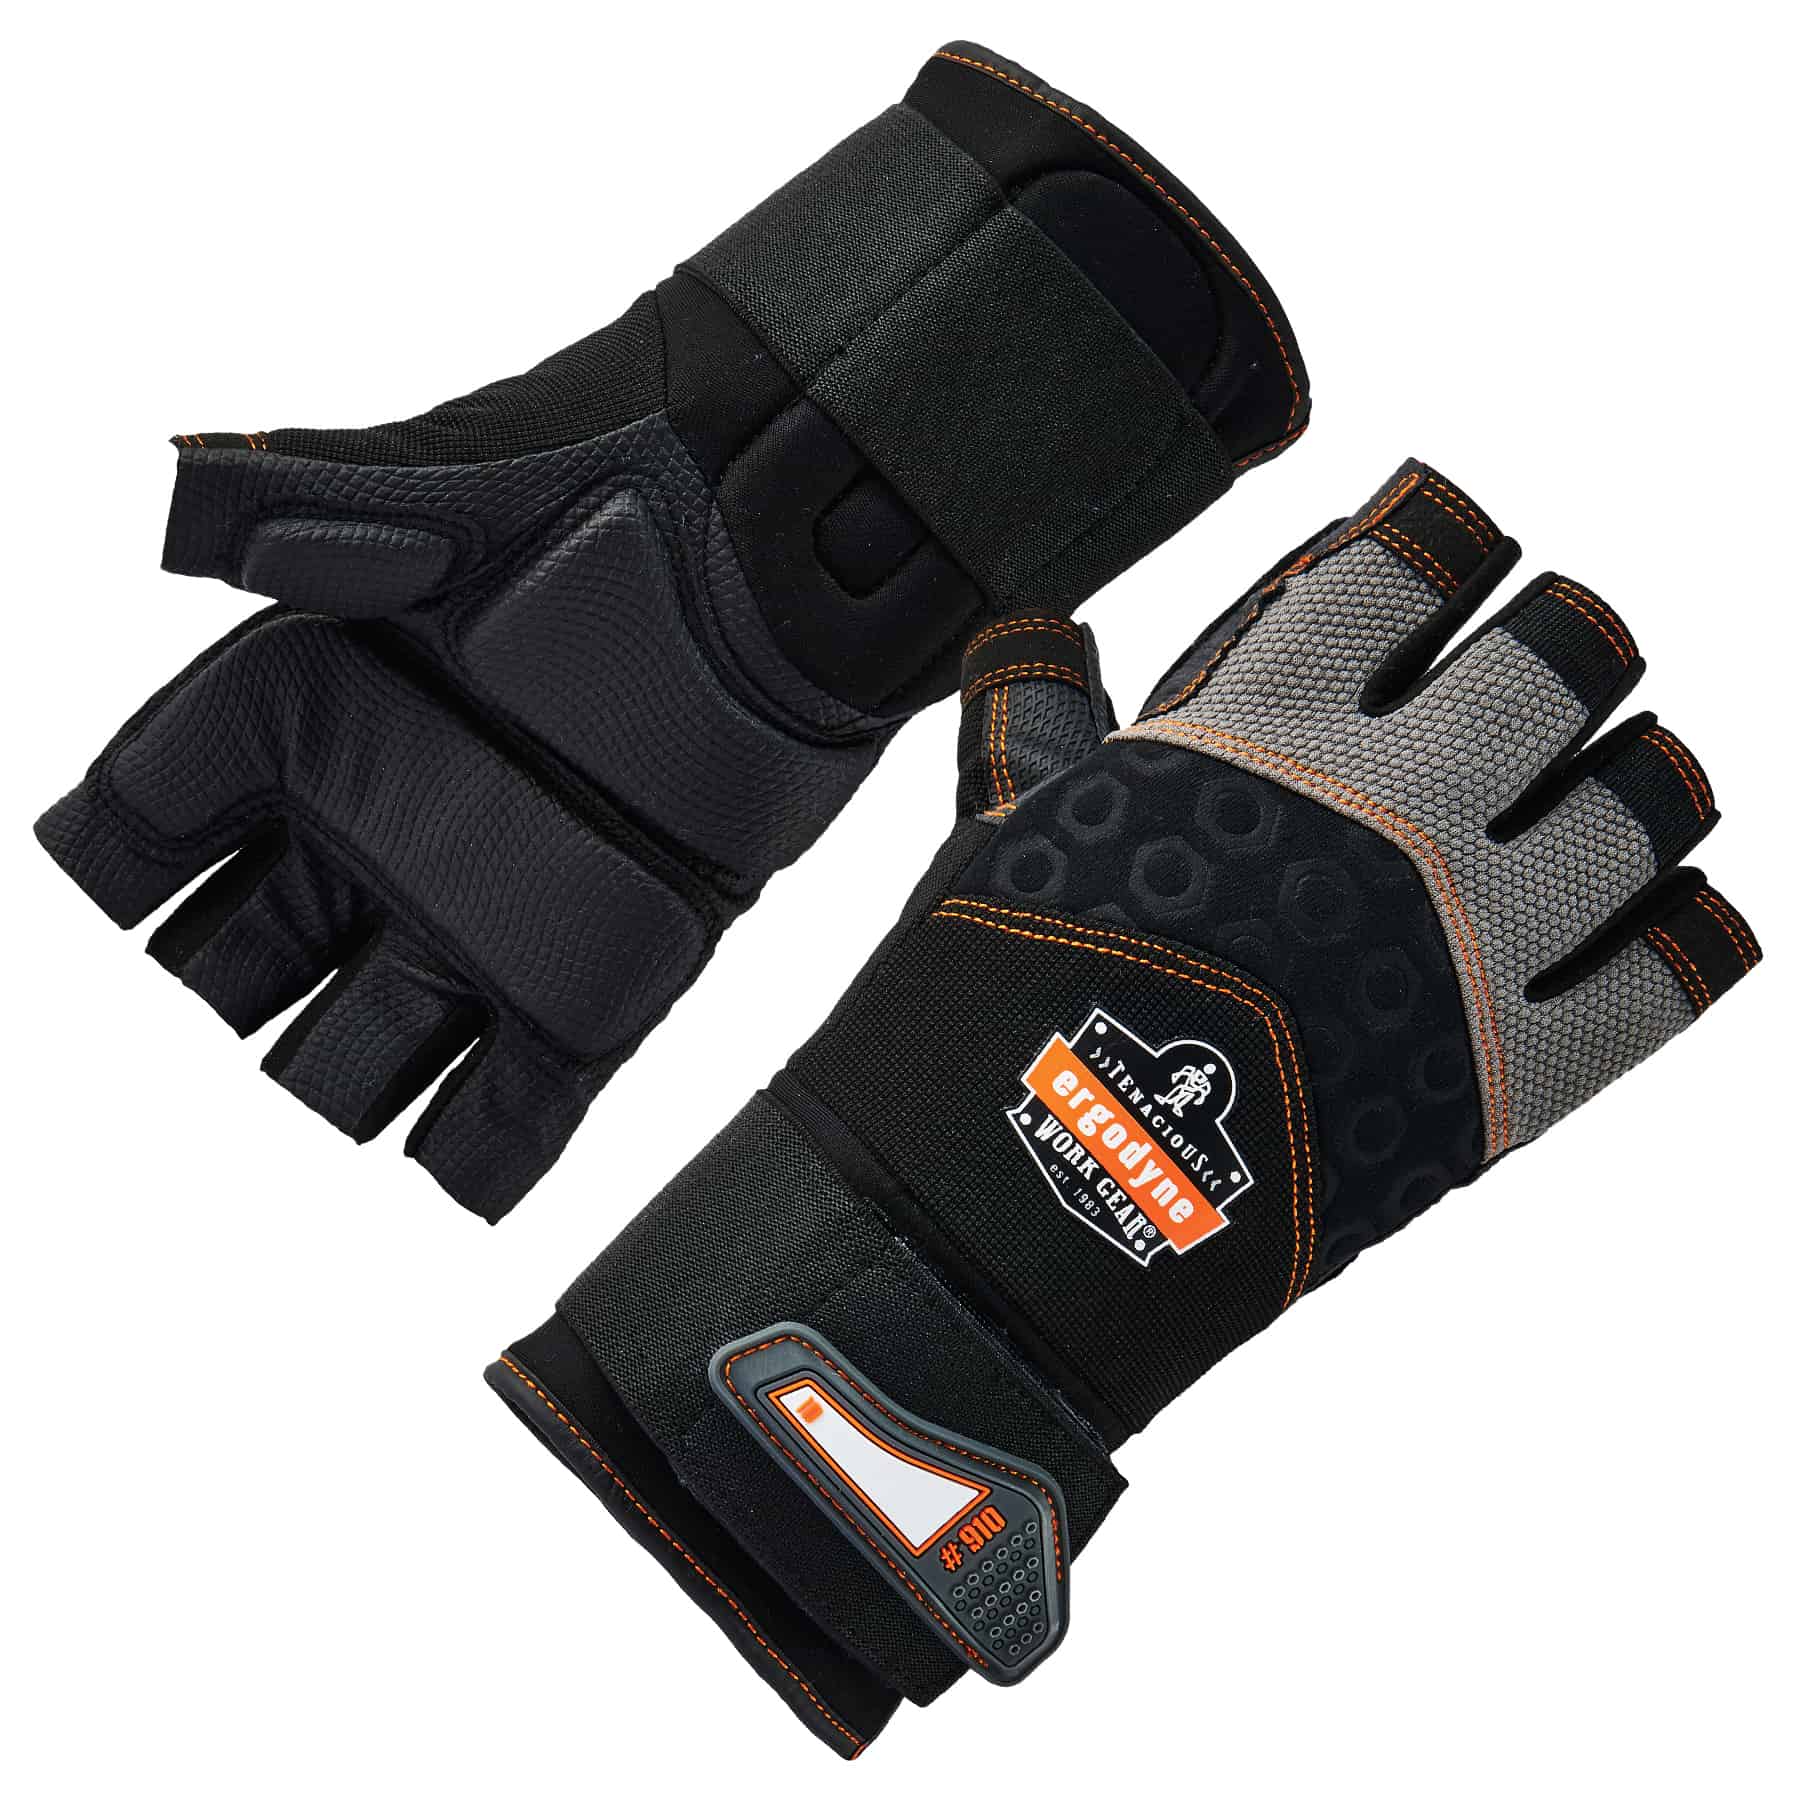 Black Ergodyne 901 Fingerless Leather Impact Protection Work Gloves 